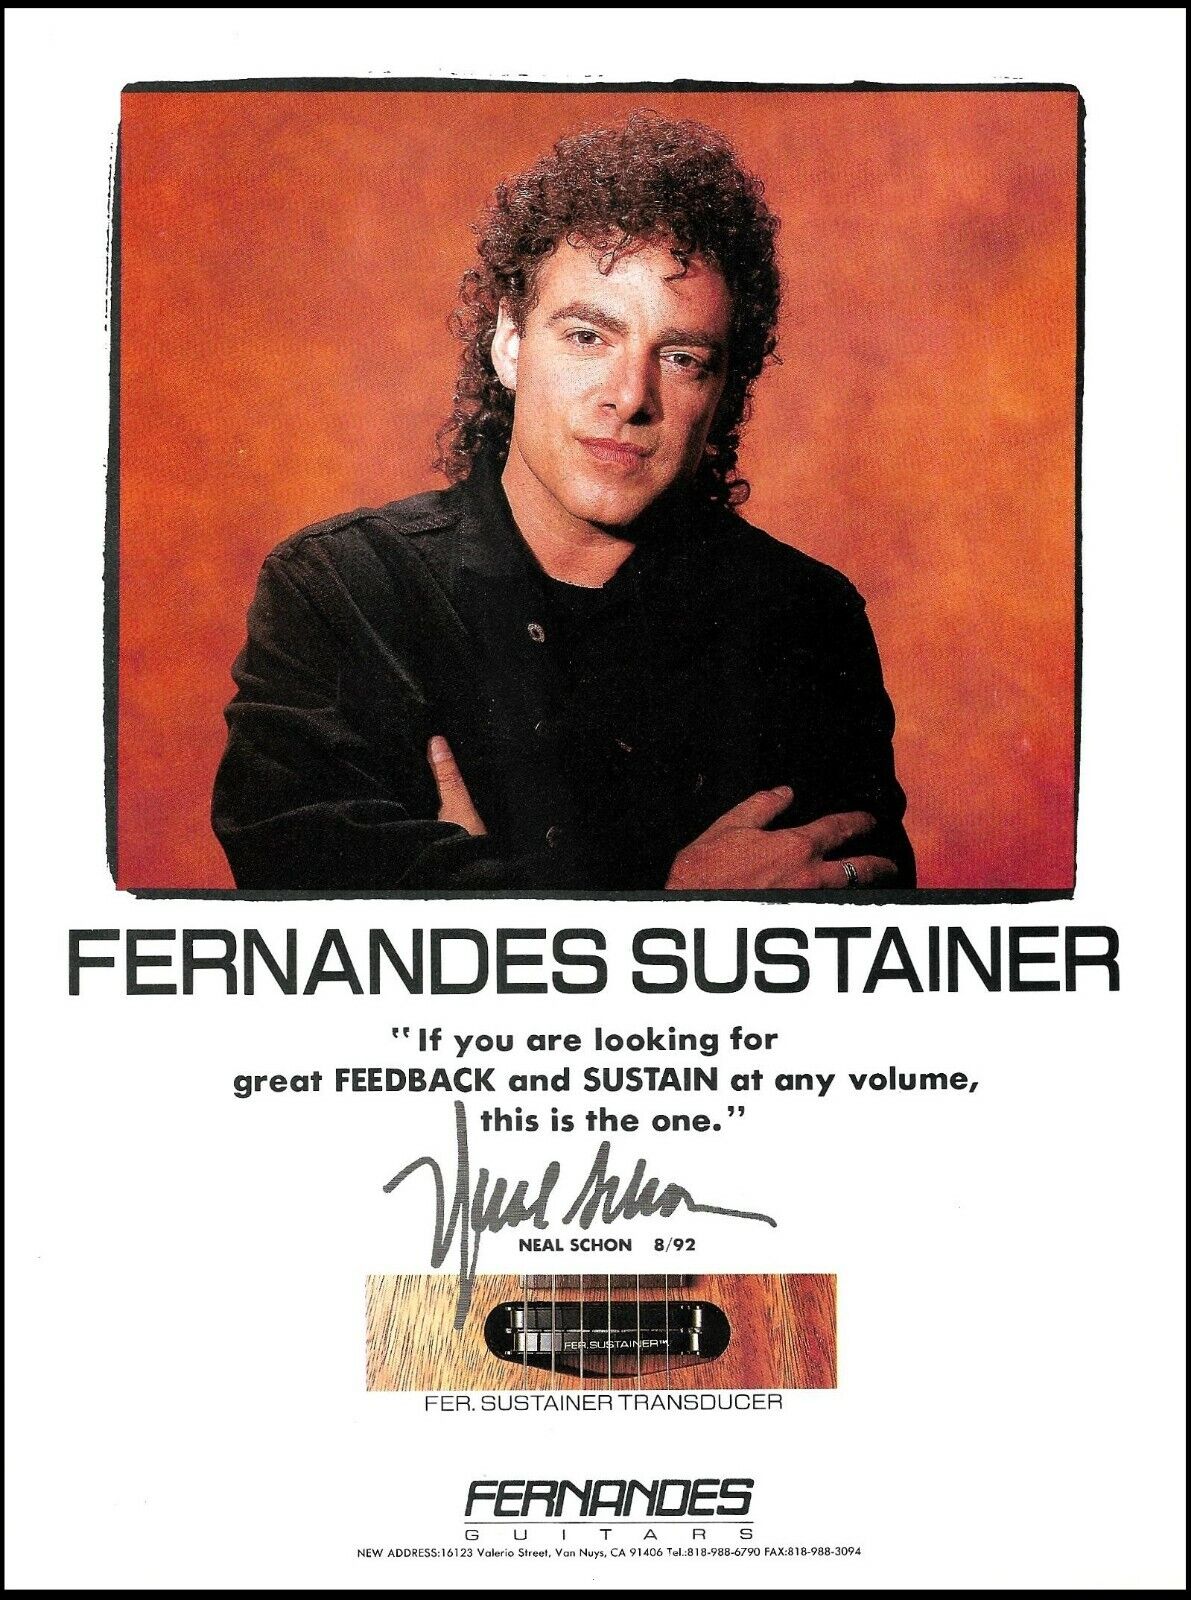 Journey Neal Schon 1993 Fernandes Sustainer Transducer Guitar advertisement ad